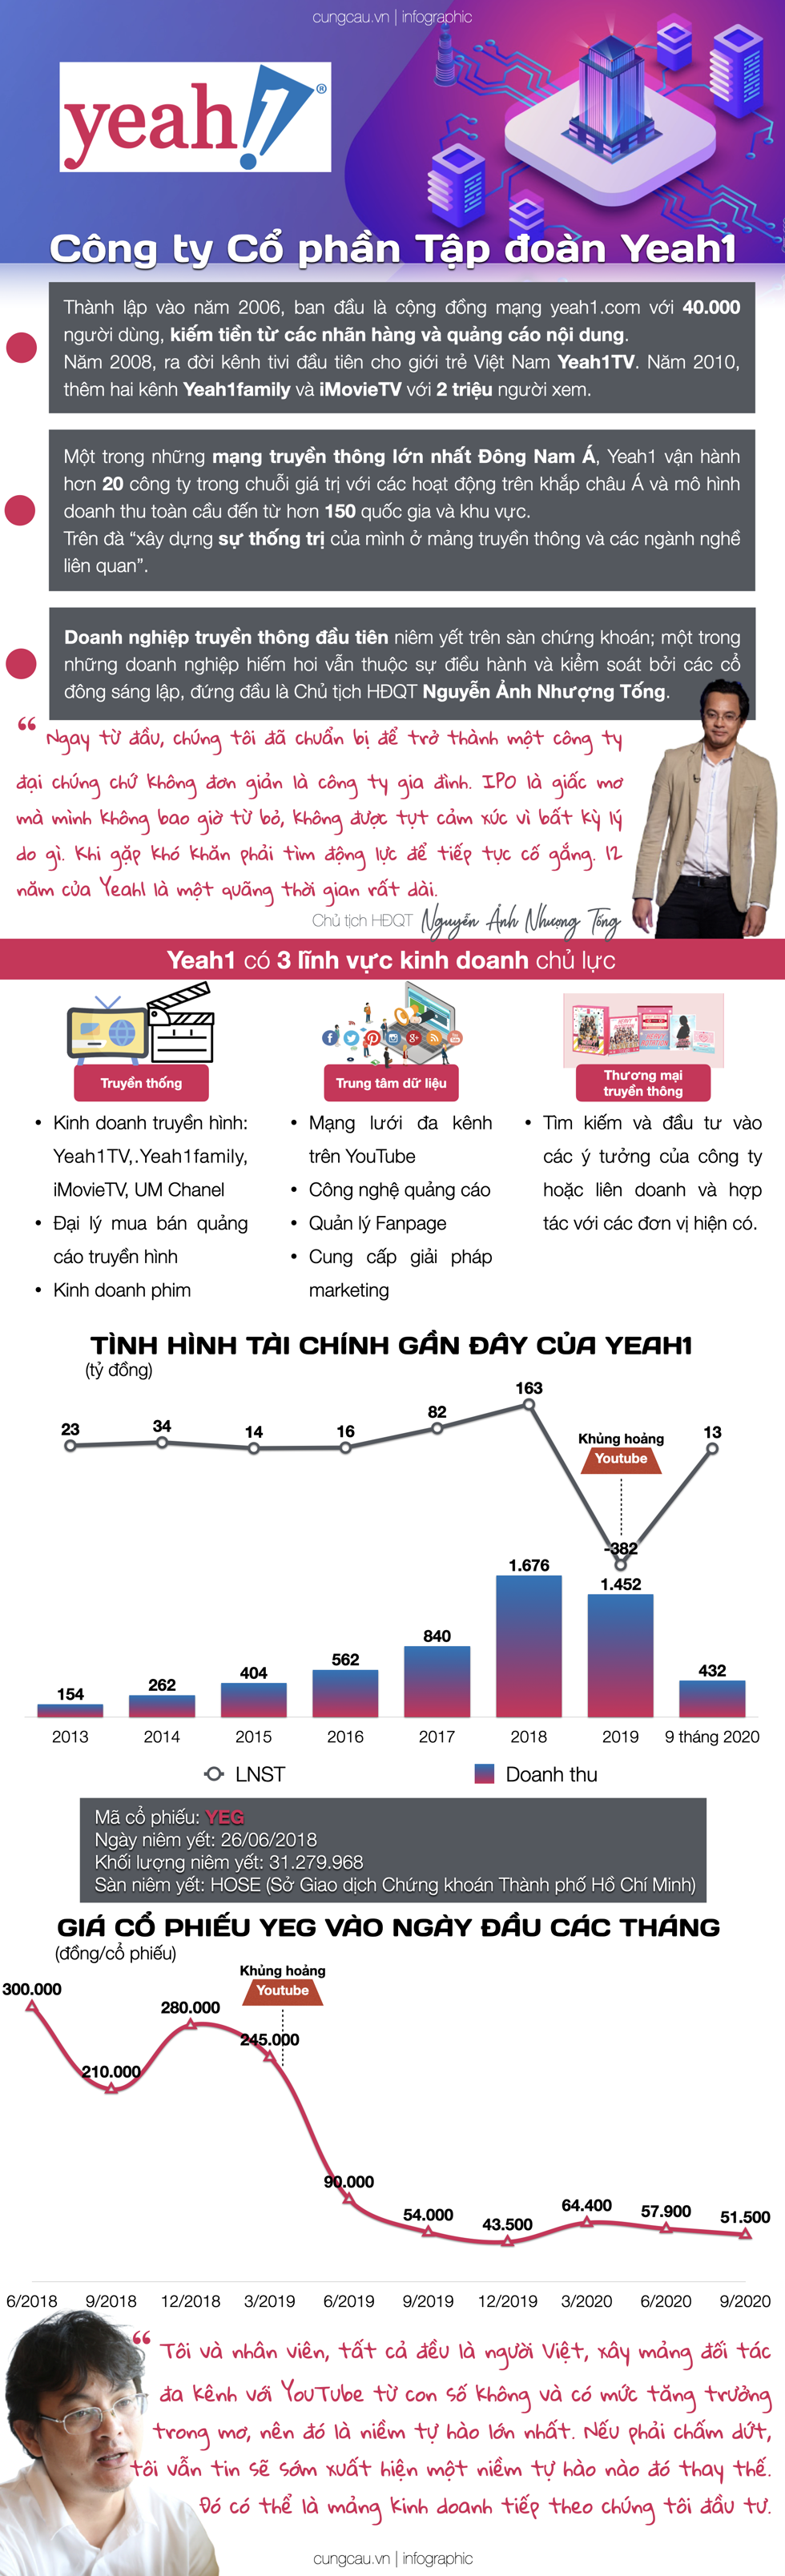 Hồ sơ doanh nghiệp: Tập đoàn Yeah1, giấc mơ châu Á và khủng hoảng YouTube.